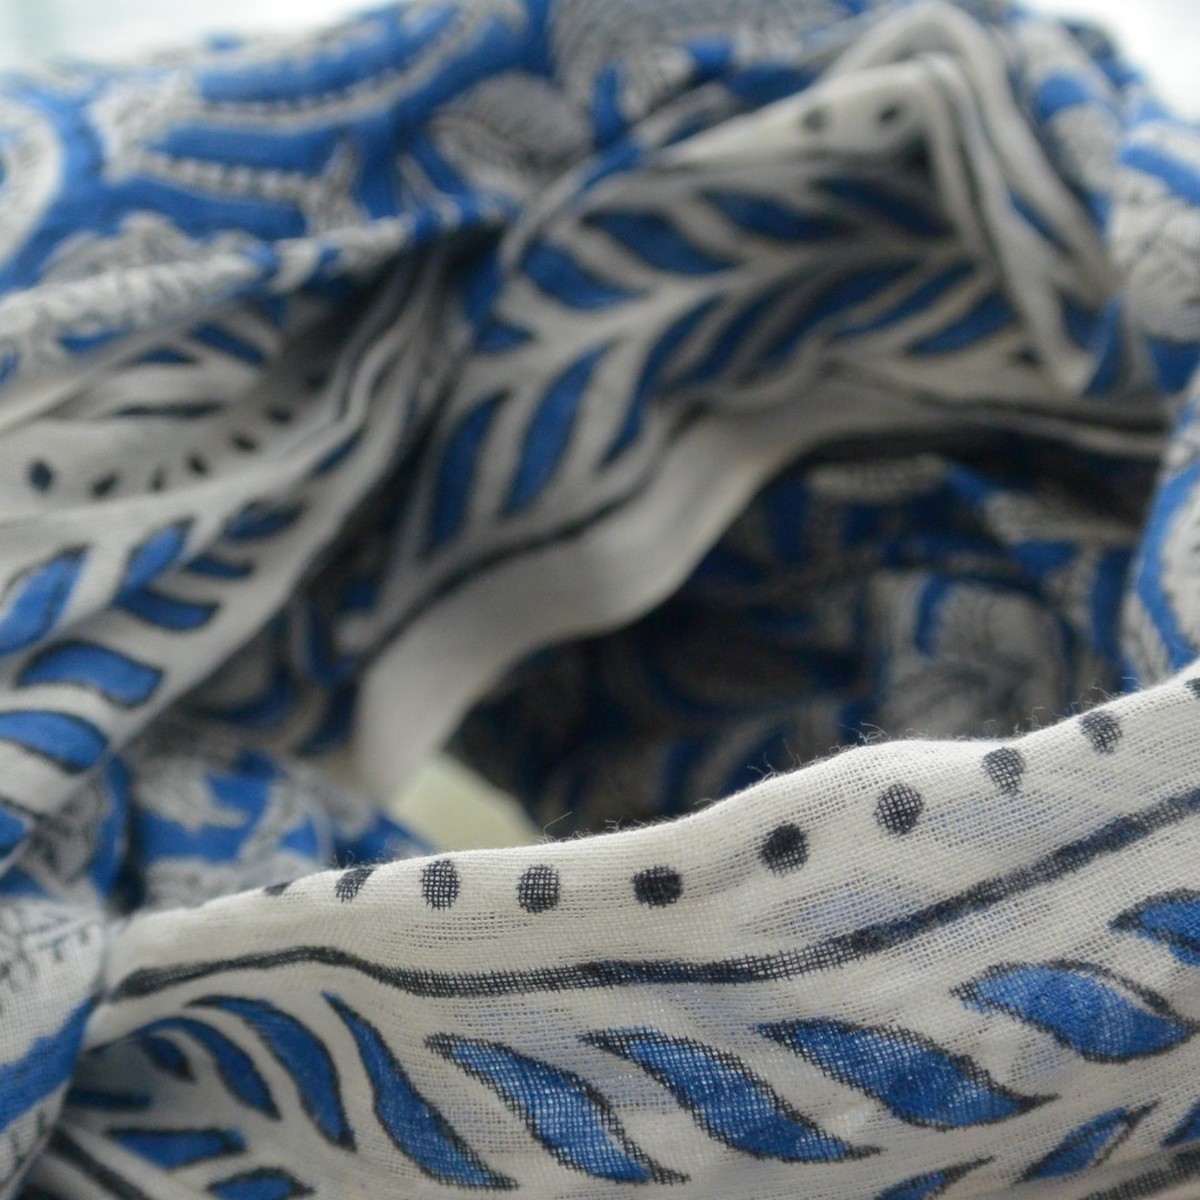 foulard zen ethic etole-blockprint-leaf-100-coton-110x180-cm une idee cadeau chez ugo et lea   (2)